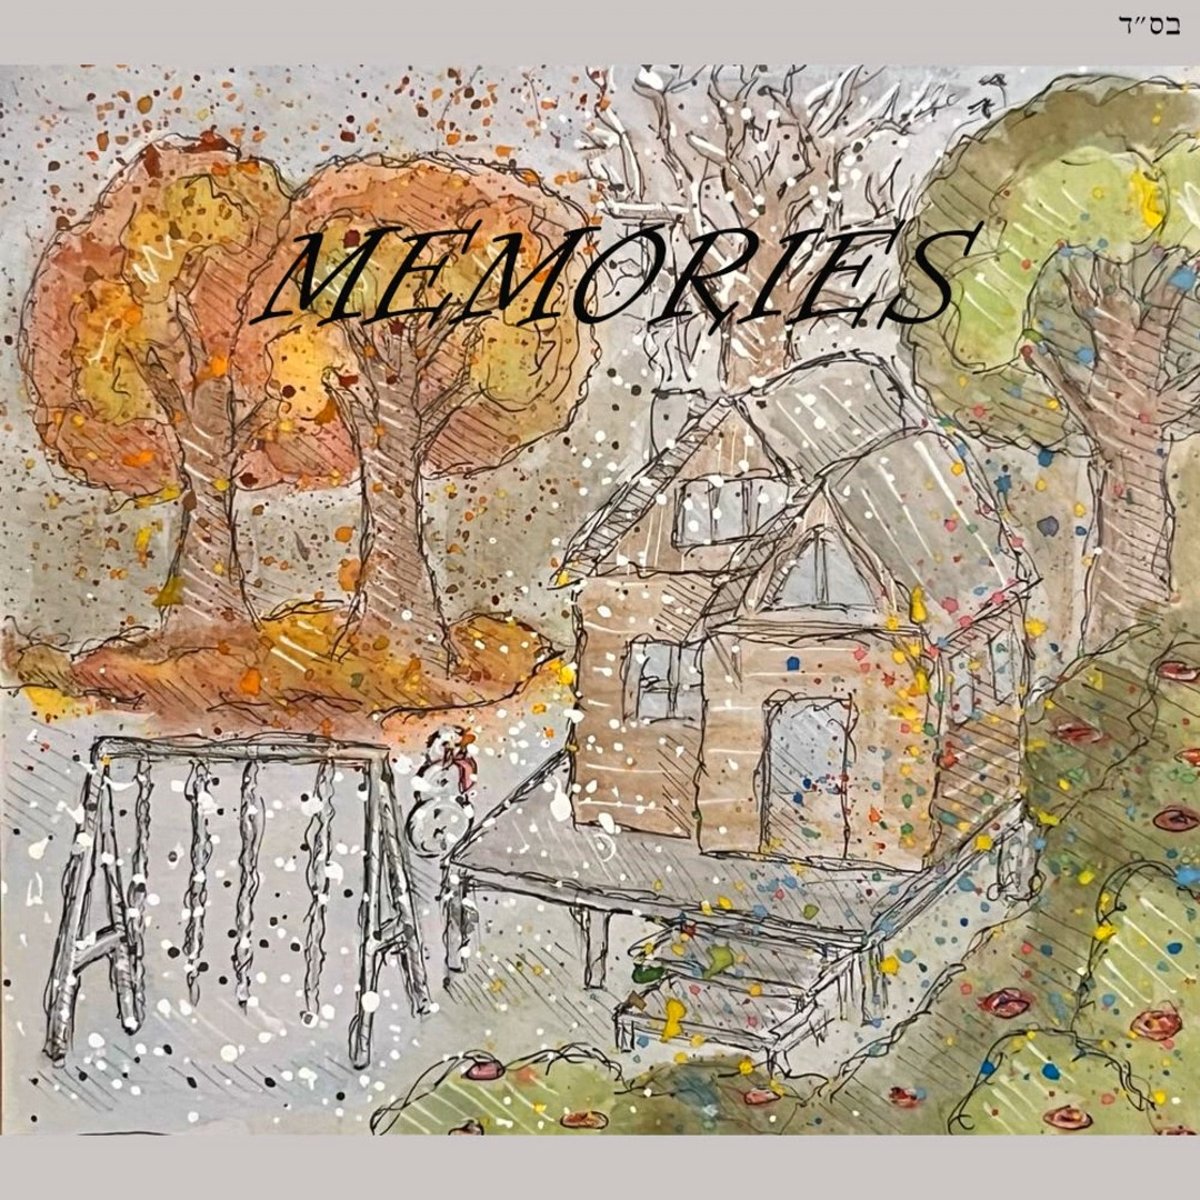 היוצר הייחודי בסינגל חדש: "זכרונות"